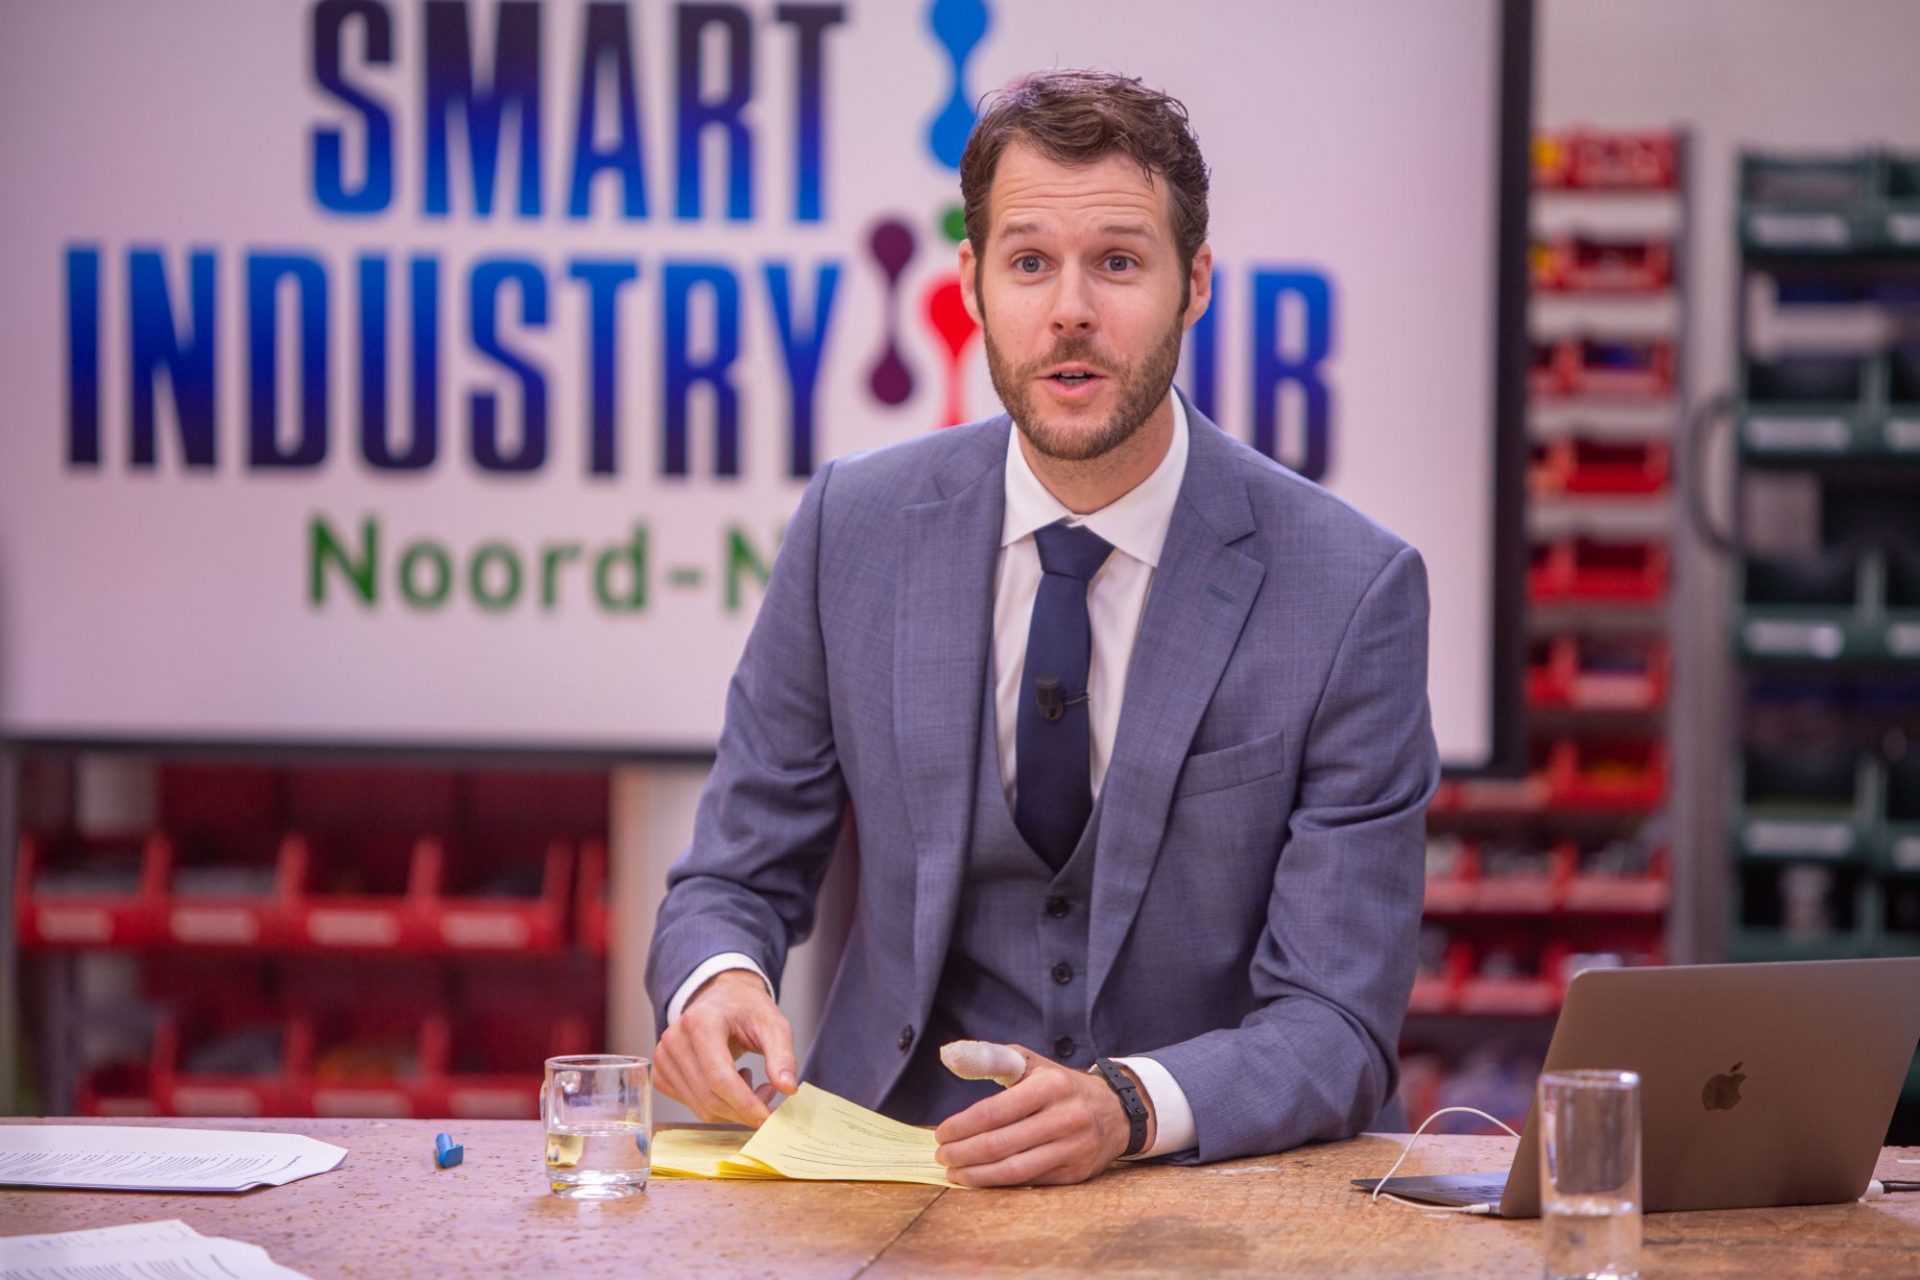 Recordbelangstelling voor de kick-off van de Smart Industry Hub Noord Nederland